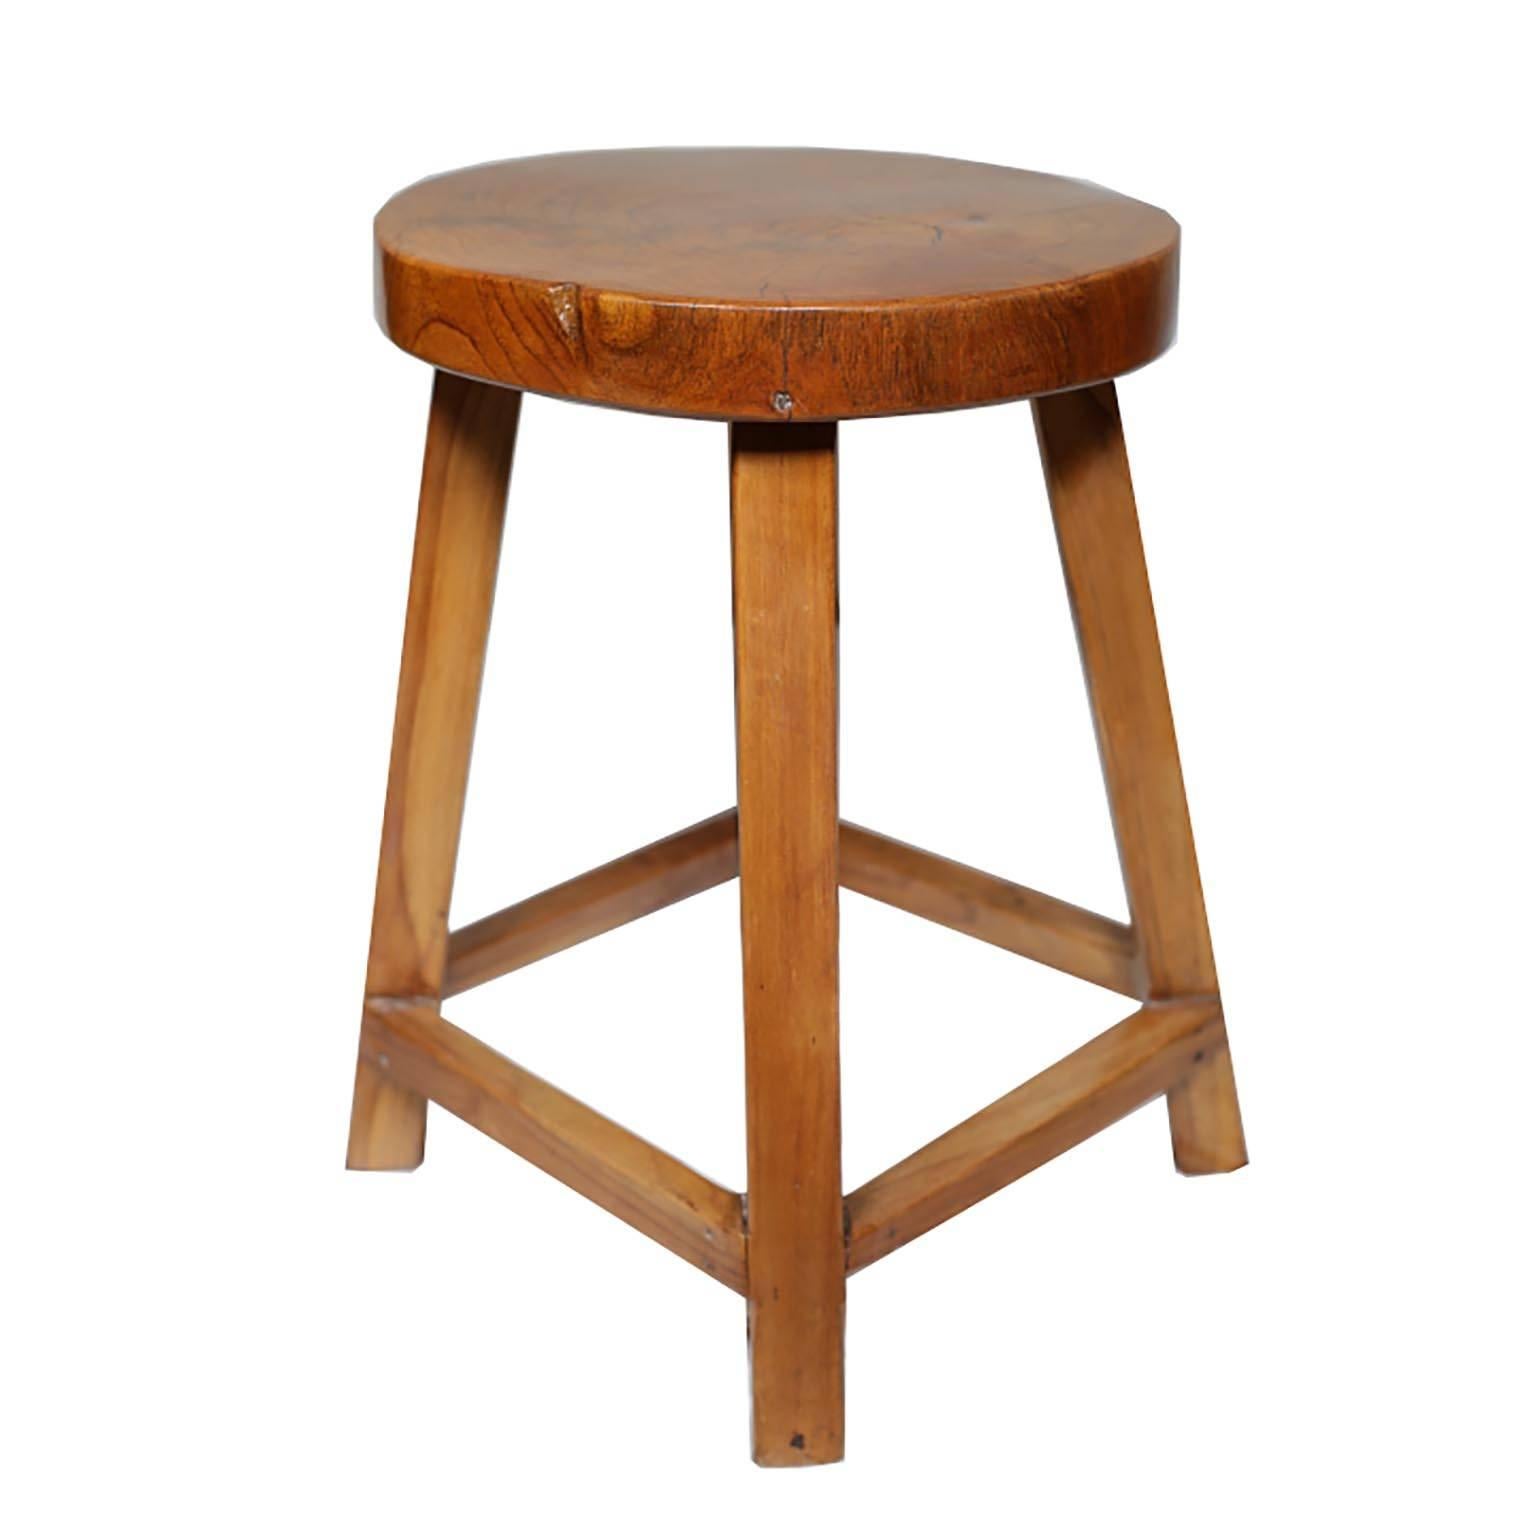 Beautiful constructed Koa wood stool.